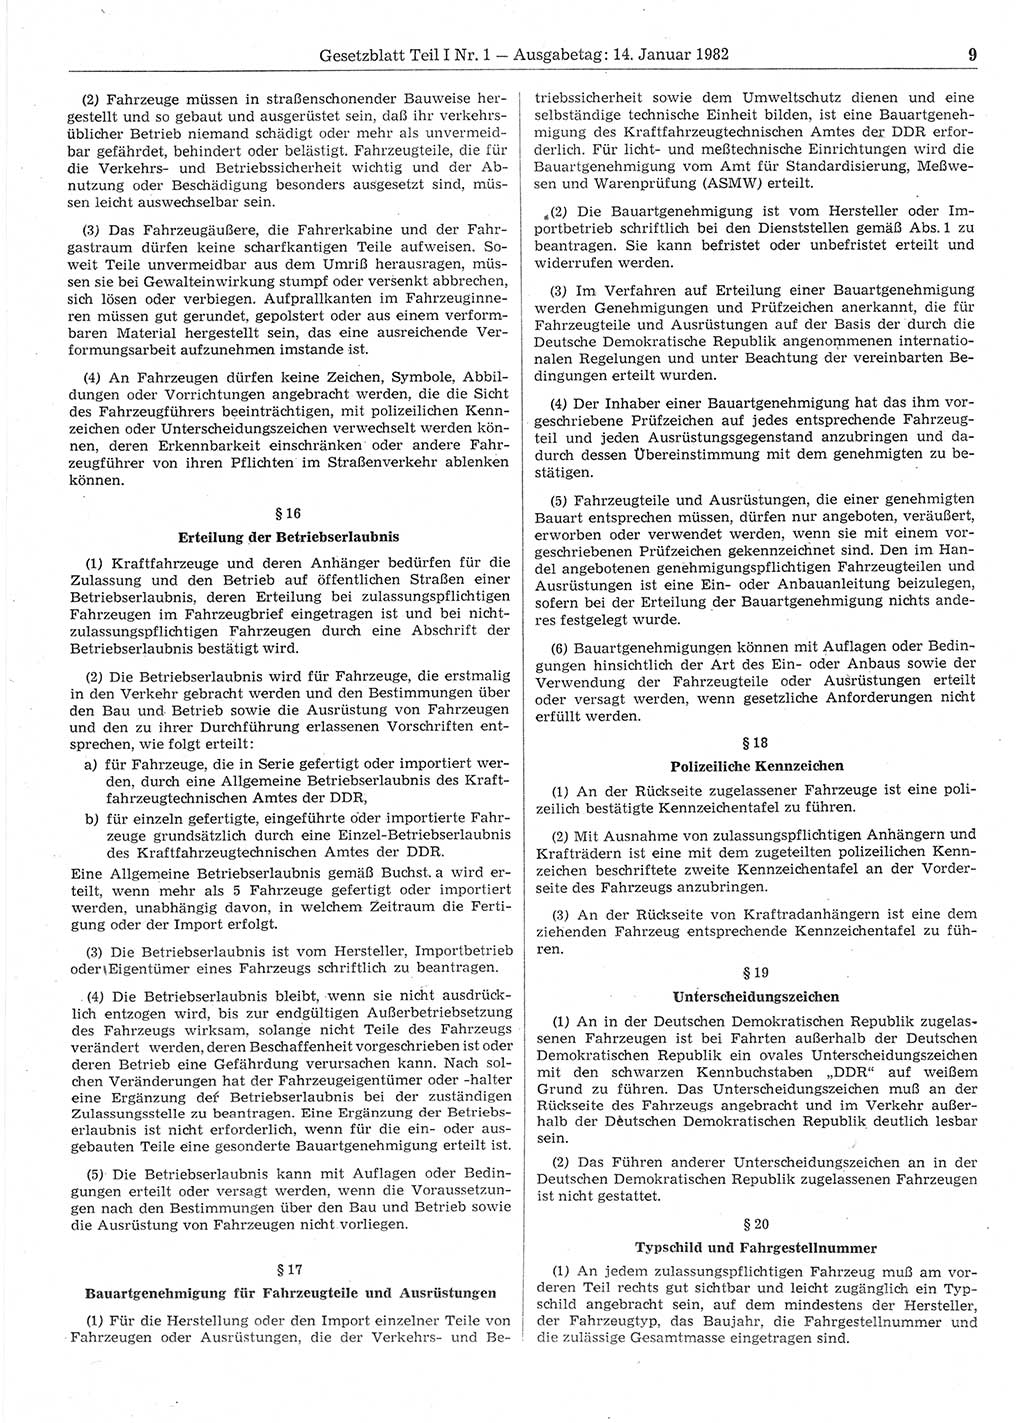 Gesetzblatt (GBl.) der Deutschen Demokratischen Republik (DDR) Teil Ⅰ 1982, Seite 9 (GBl. DDR Ⅰ 1982, S. 9)